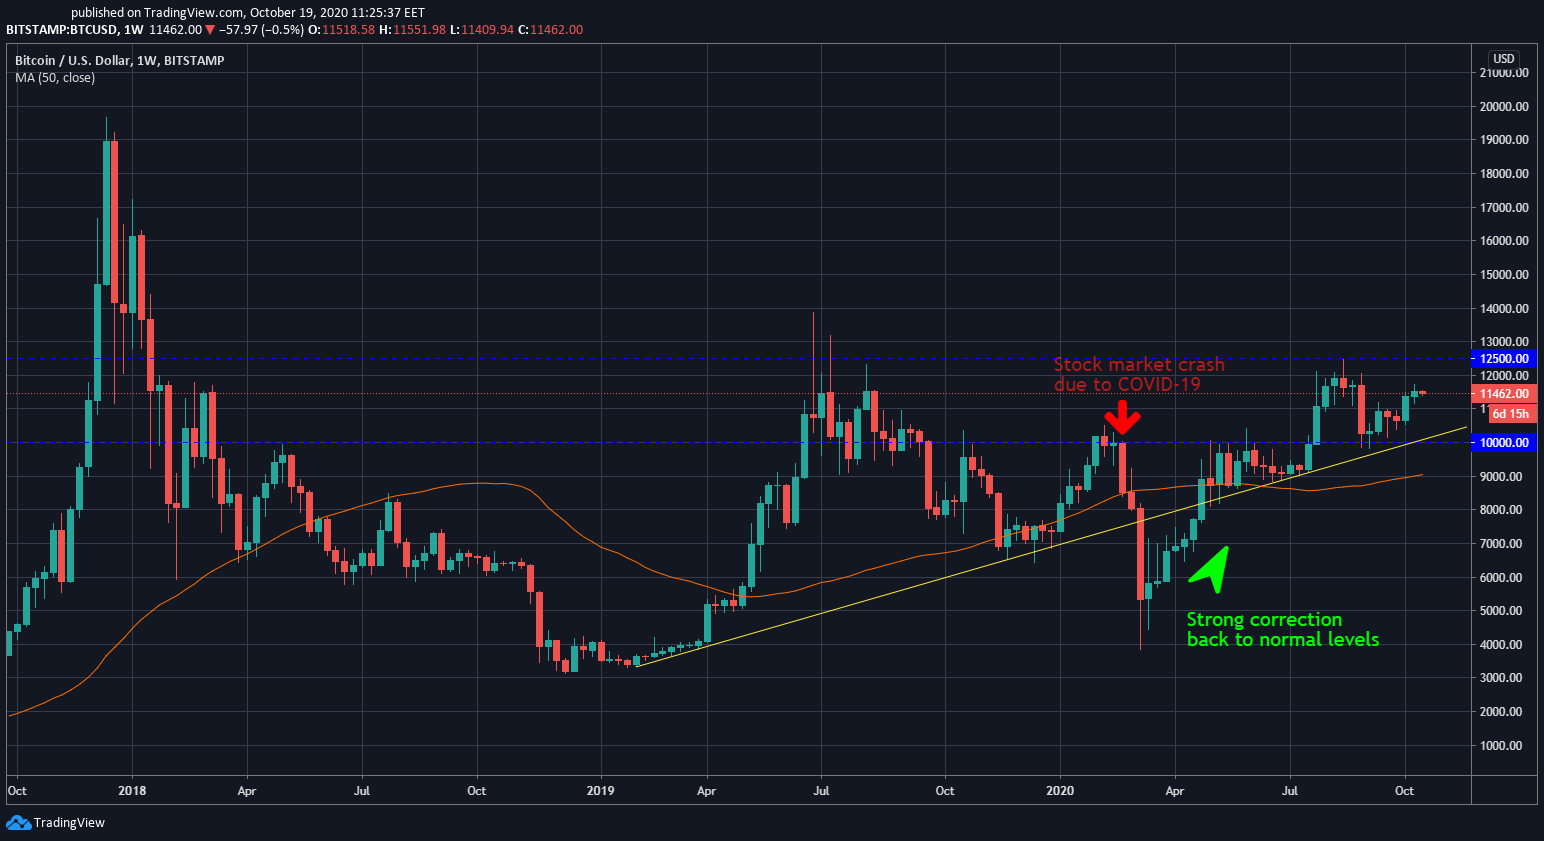 BTC/USD 1W price chart